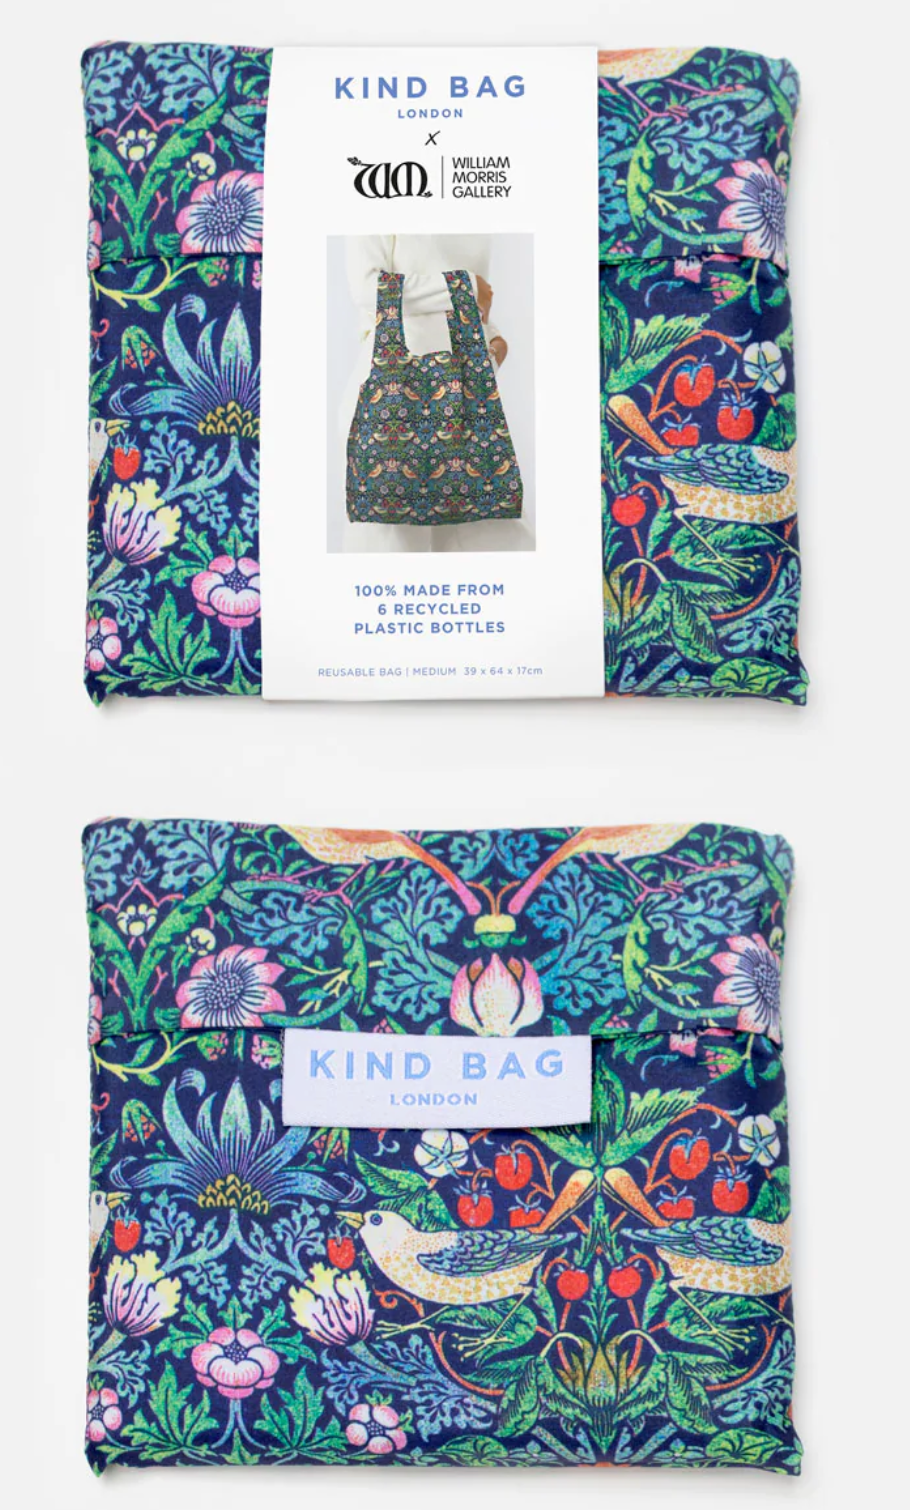 Reusable Shopping Bag in William Morris Print